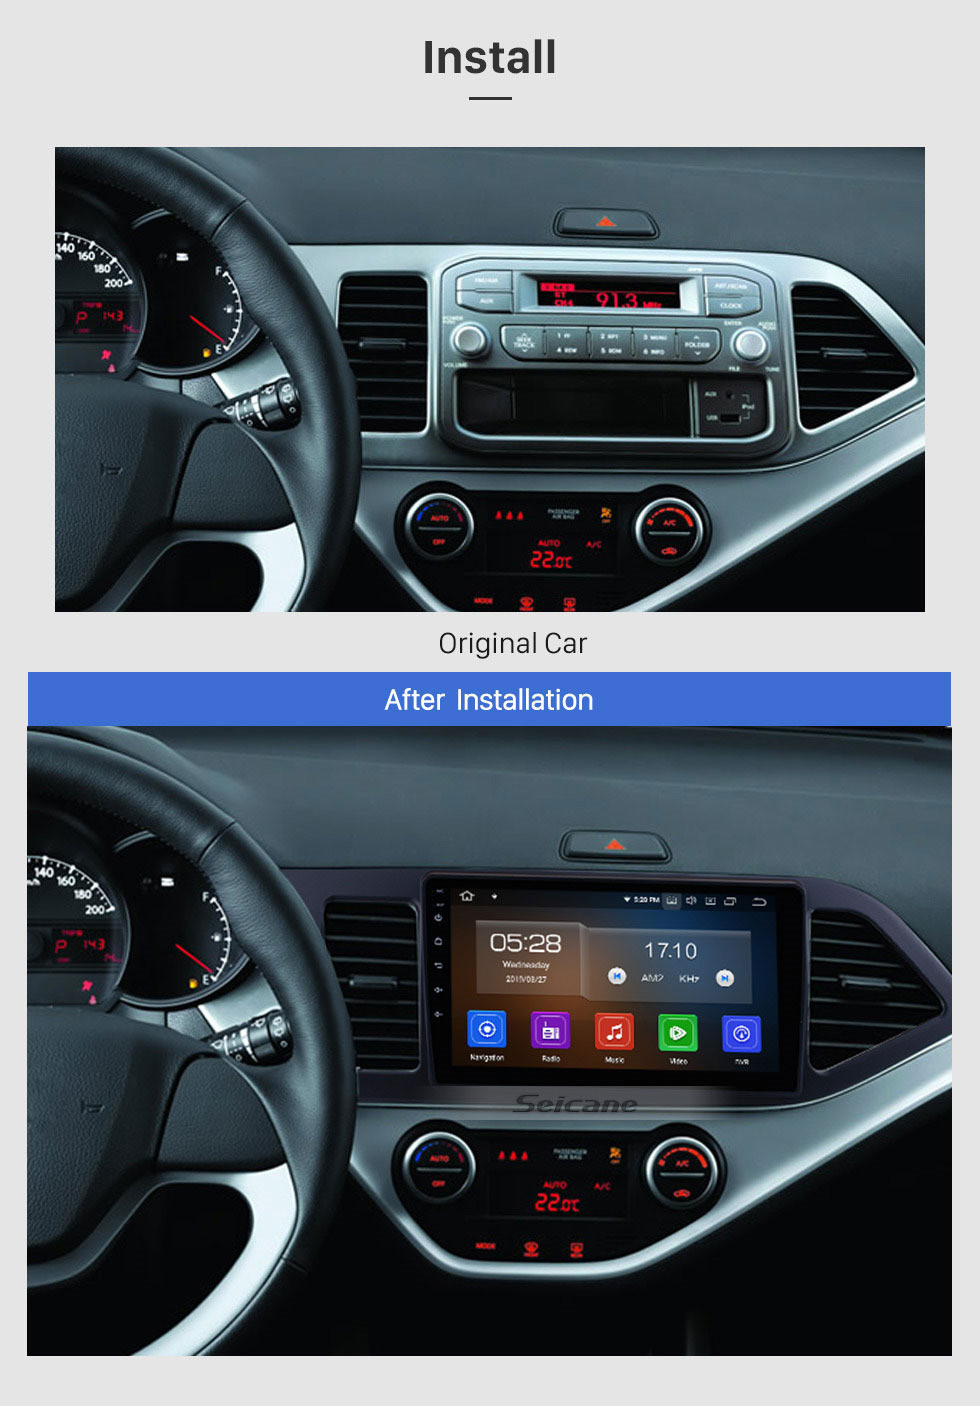 Seicane Tela de toque do sistema de navegação GPS de 9 polegadas Android 13.0 para 2011-2014 KIA Morning Picanto Suporte Rádio Bluetooth TPMS DVR OBD Mirror Link 3G WiFi TV Câmera de backup Vídeo 